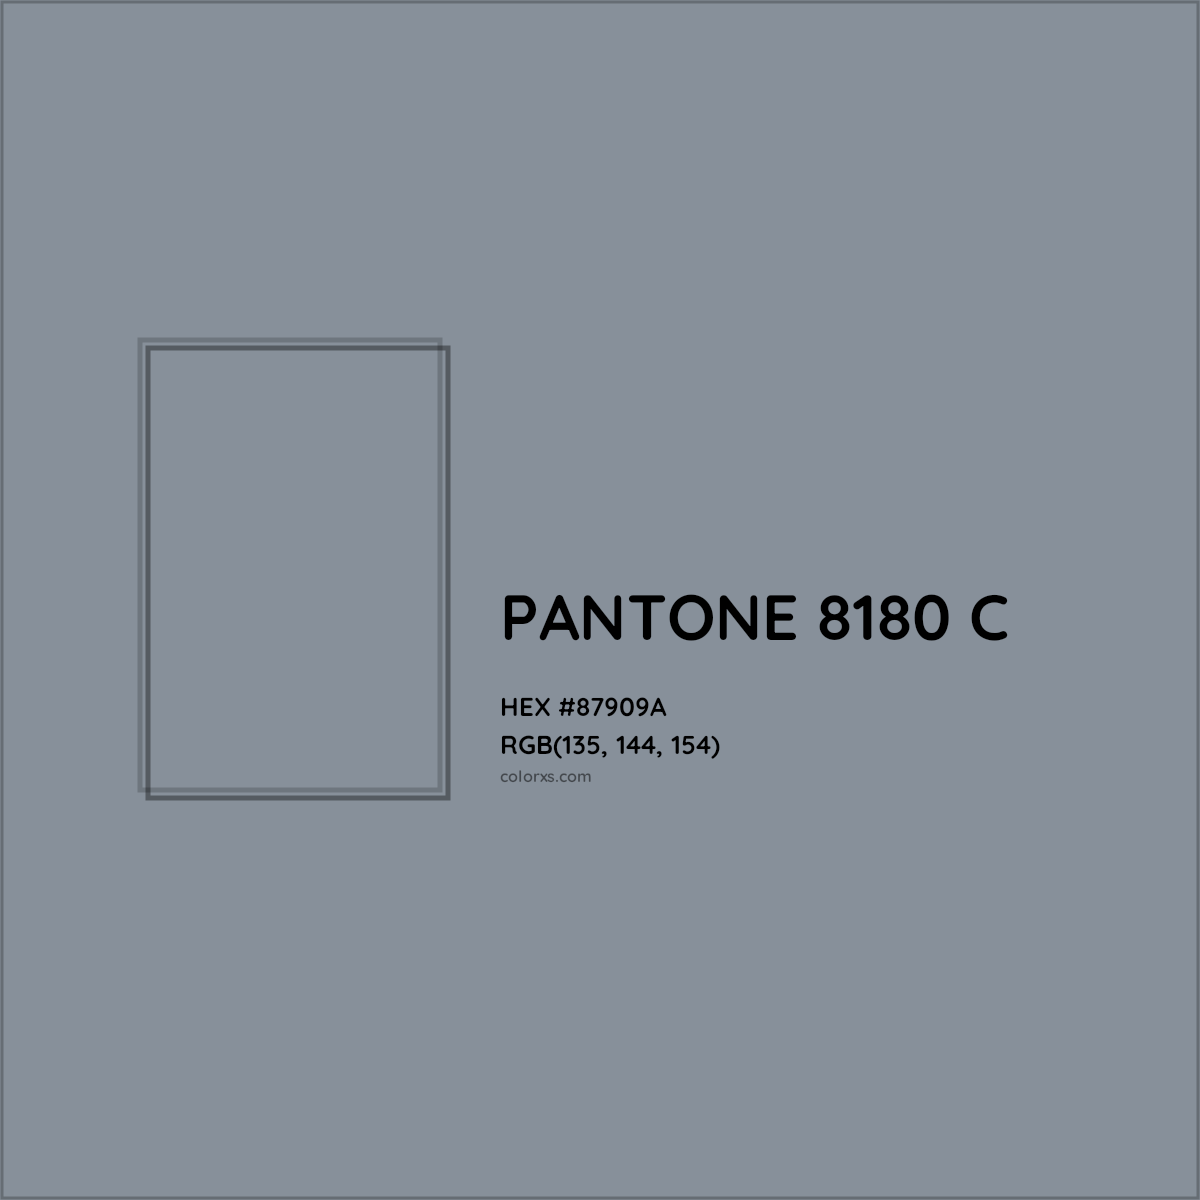 HEX #87909A PANTONE 8180 C CMS Pantone PMS - Color Code